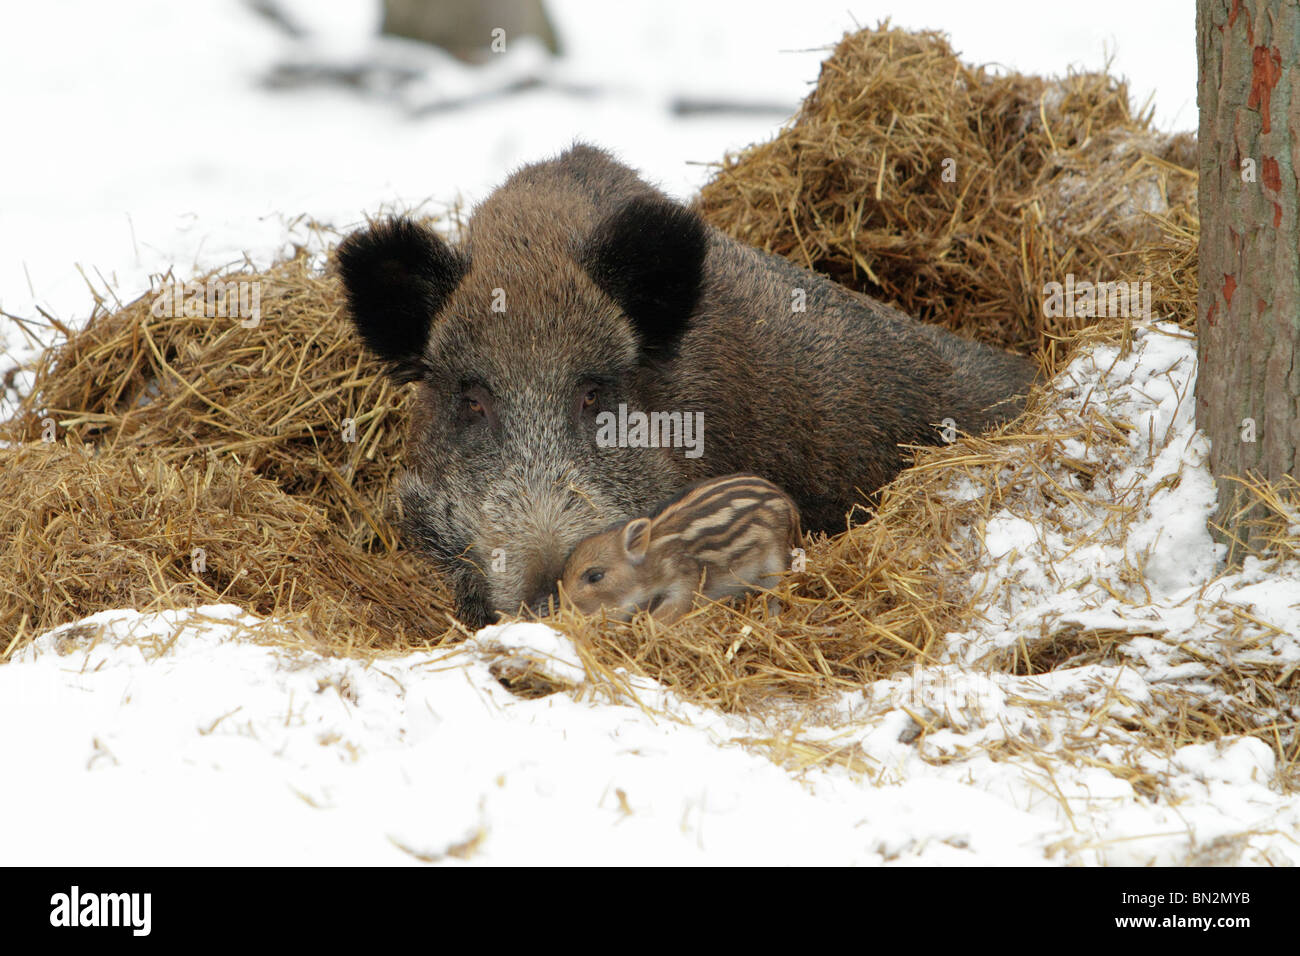 Européen de porc ou de sanglier (Sus scrofa) sow avec bébé porcinet dans nid de paille, hiver, Allemagne Banque D'Images